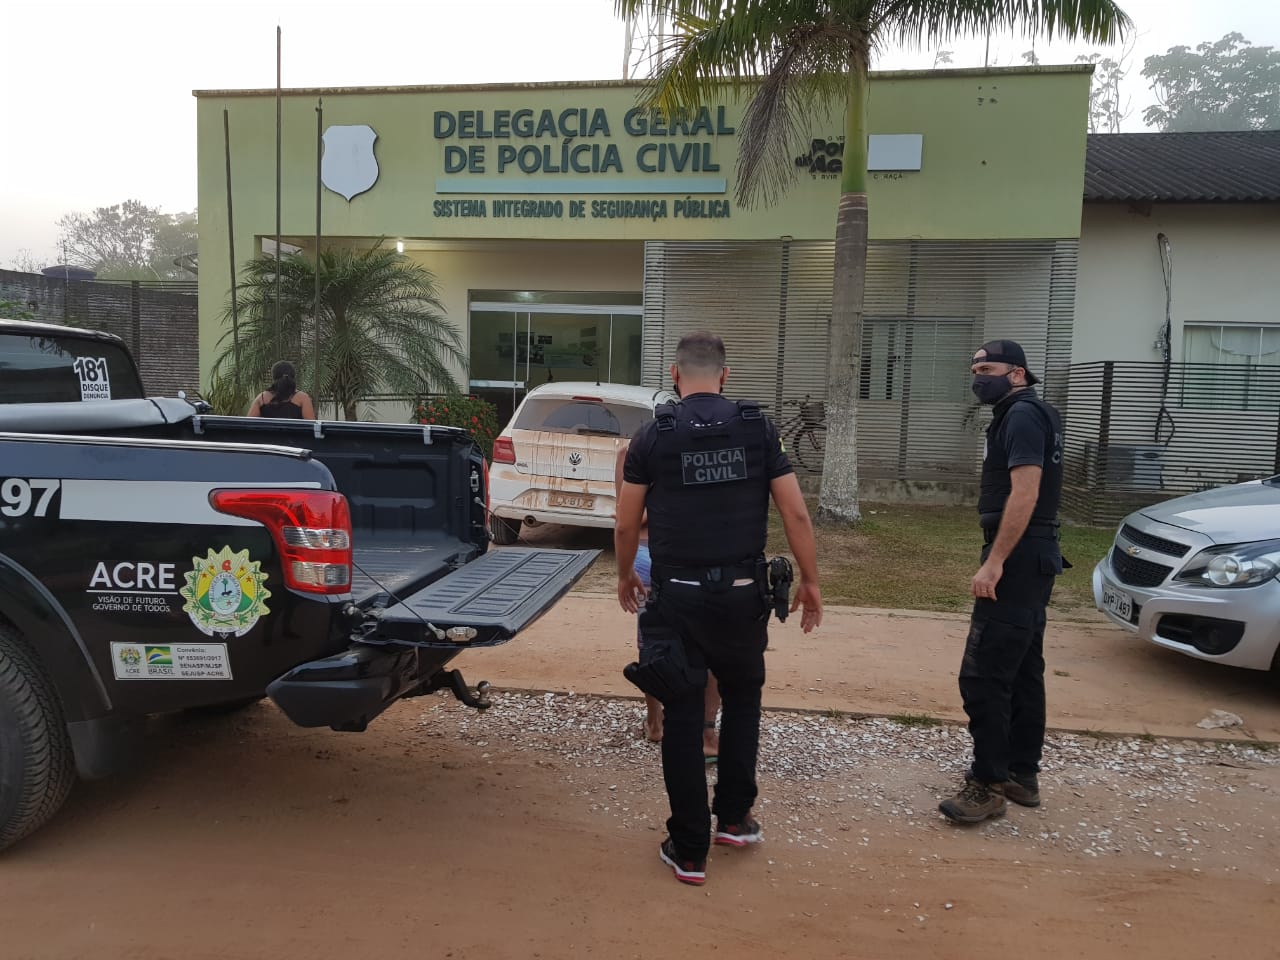 Novos policiais civis participam de operação no interior do Acre